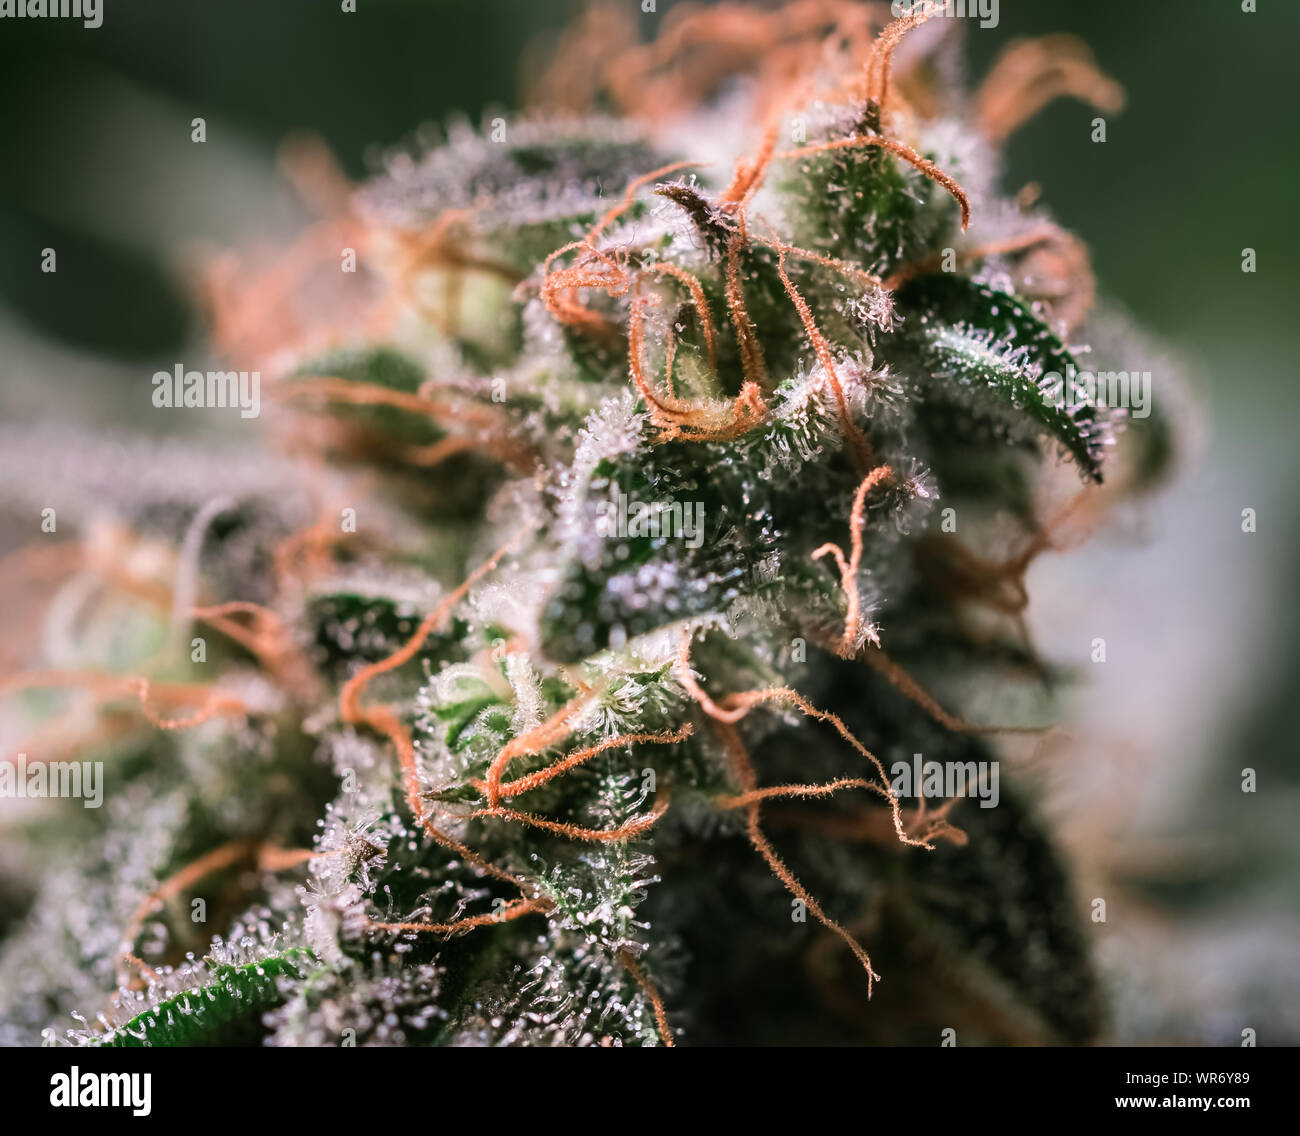 Plante de cannabis HDR Fleurs Banque D'Images